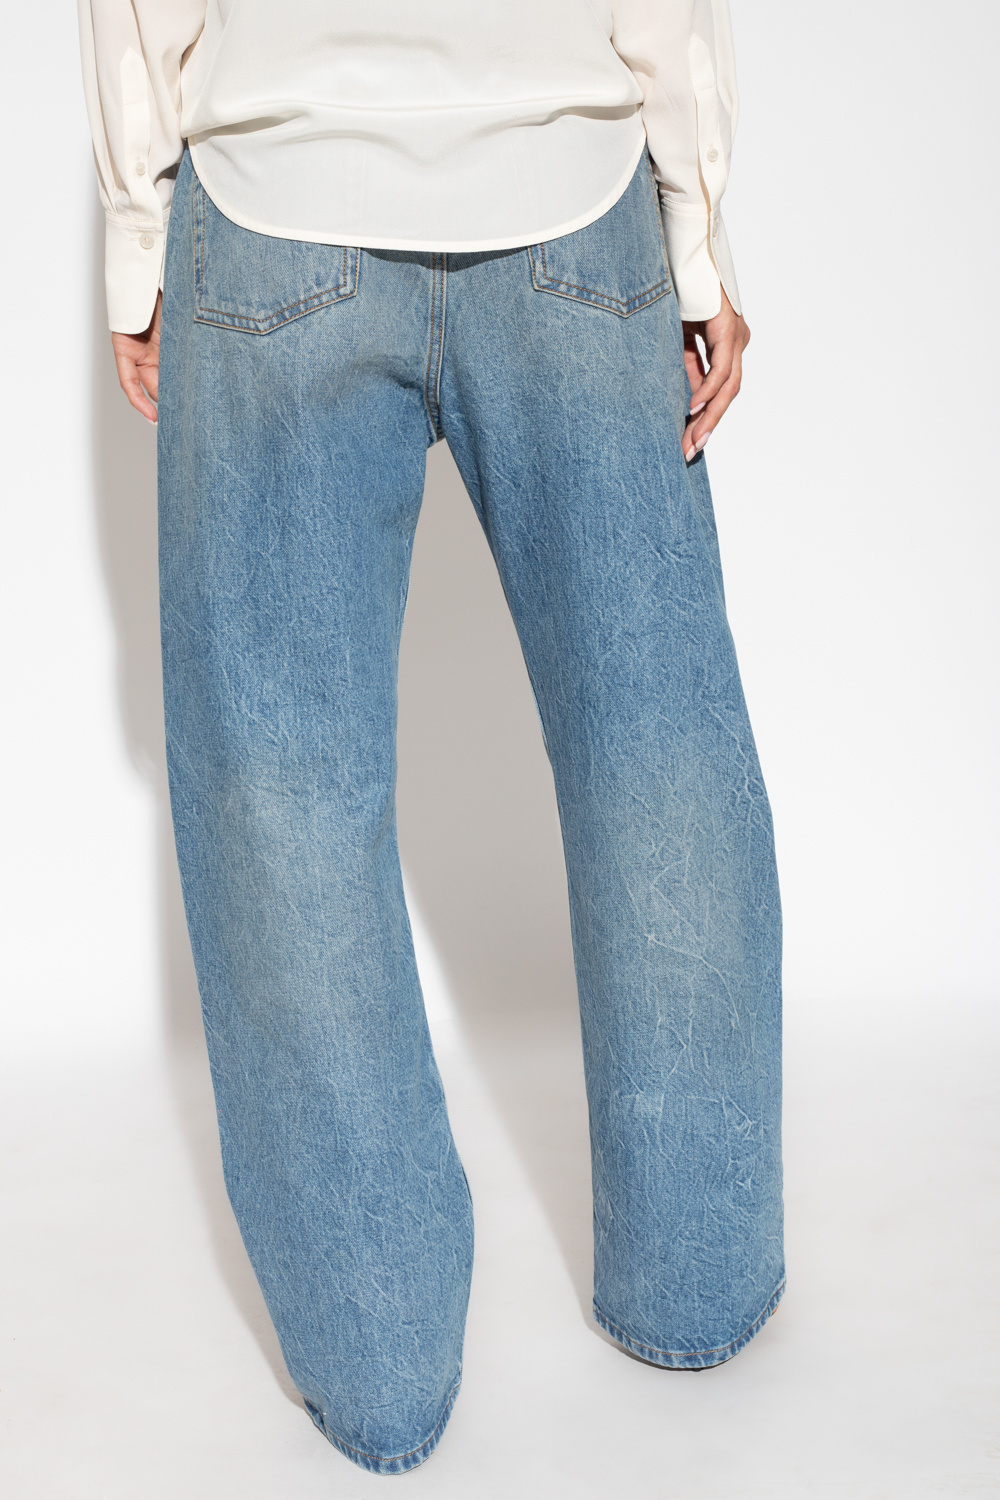 Victoria Beckham Oversized boyfriend jeans